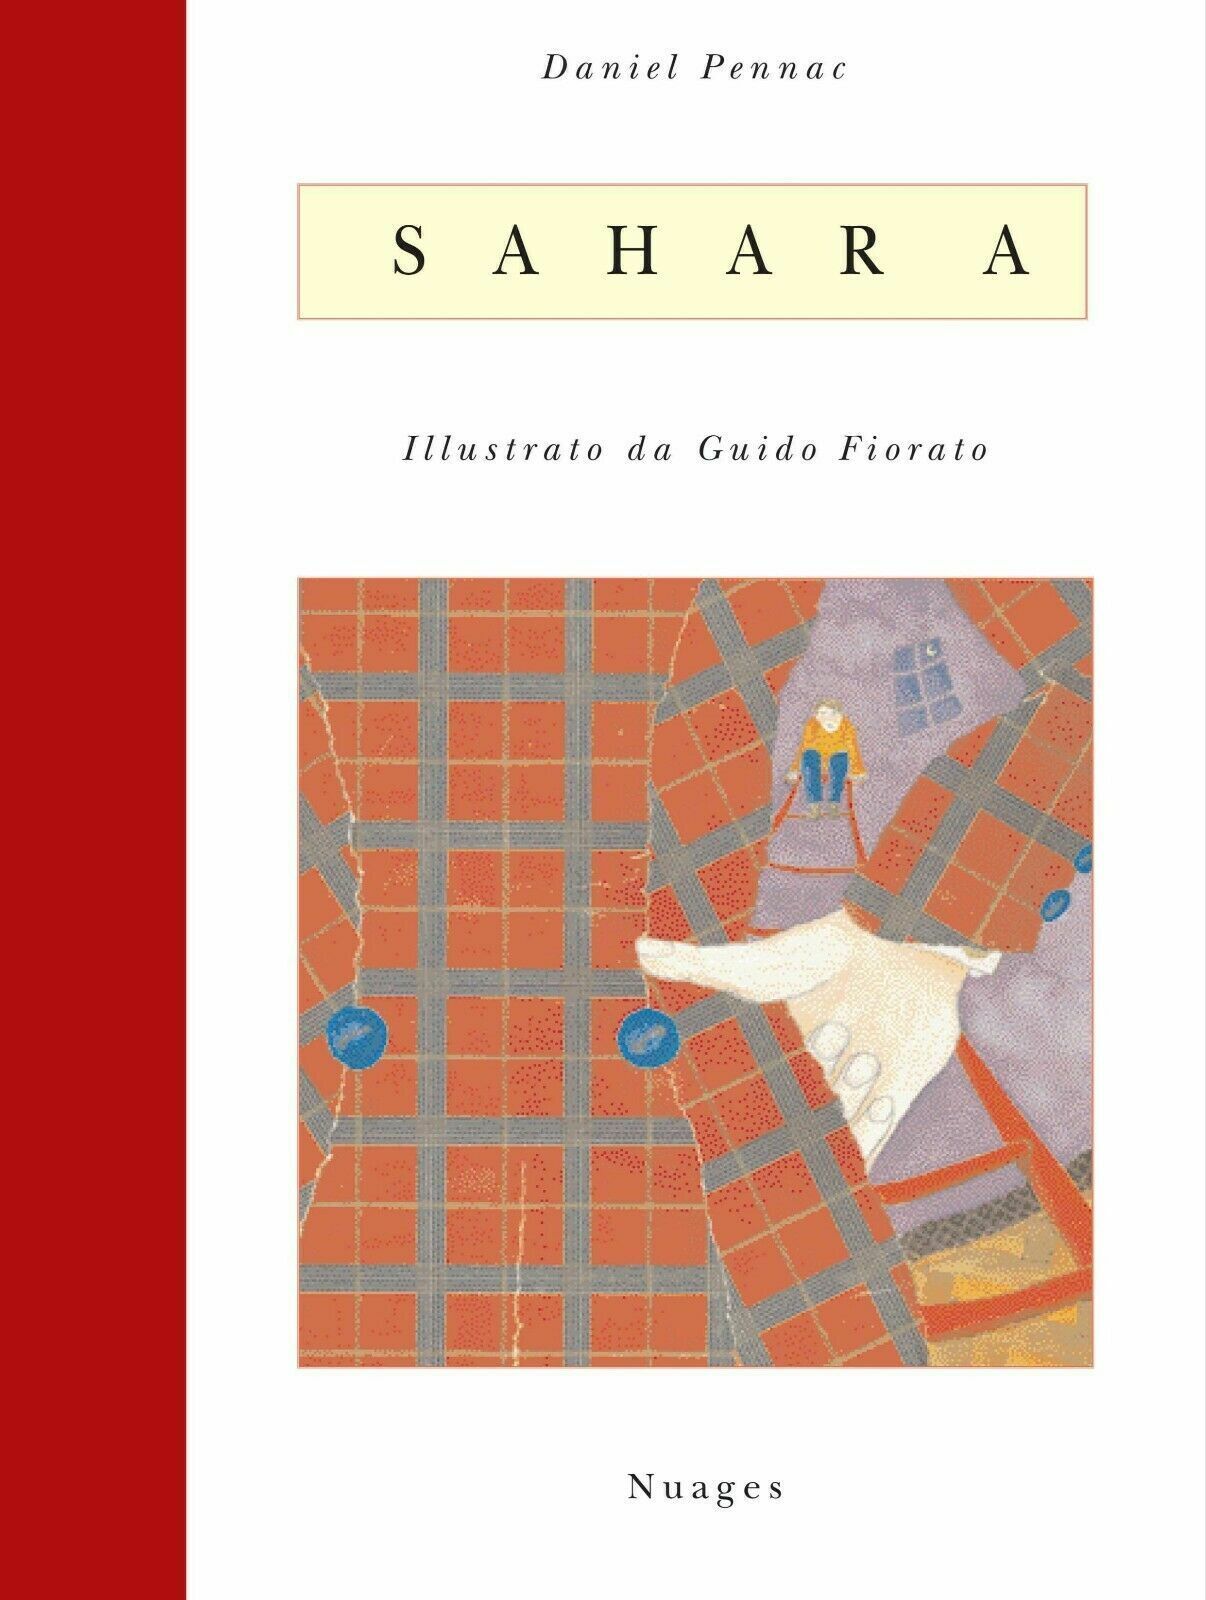 Sahara - illustazioni di Guido Fiorato di Daniel Pennac, Guido Fiorato,  2005,  